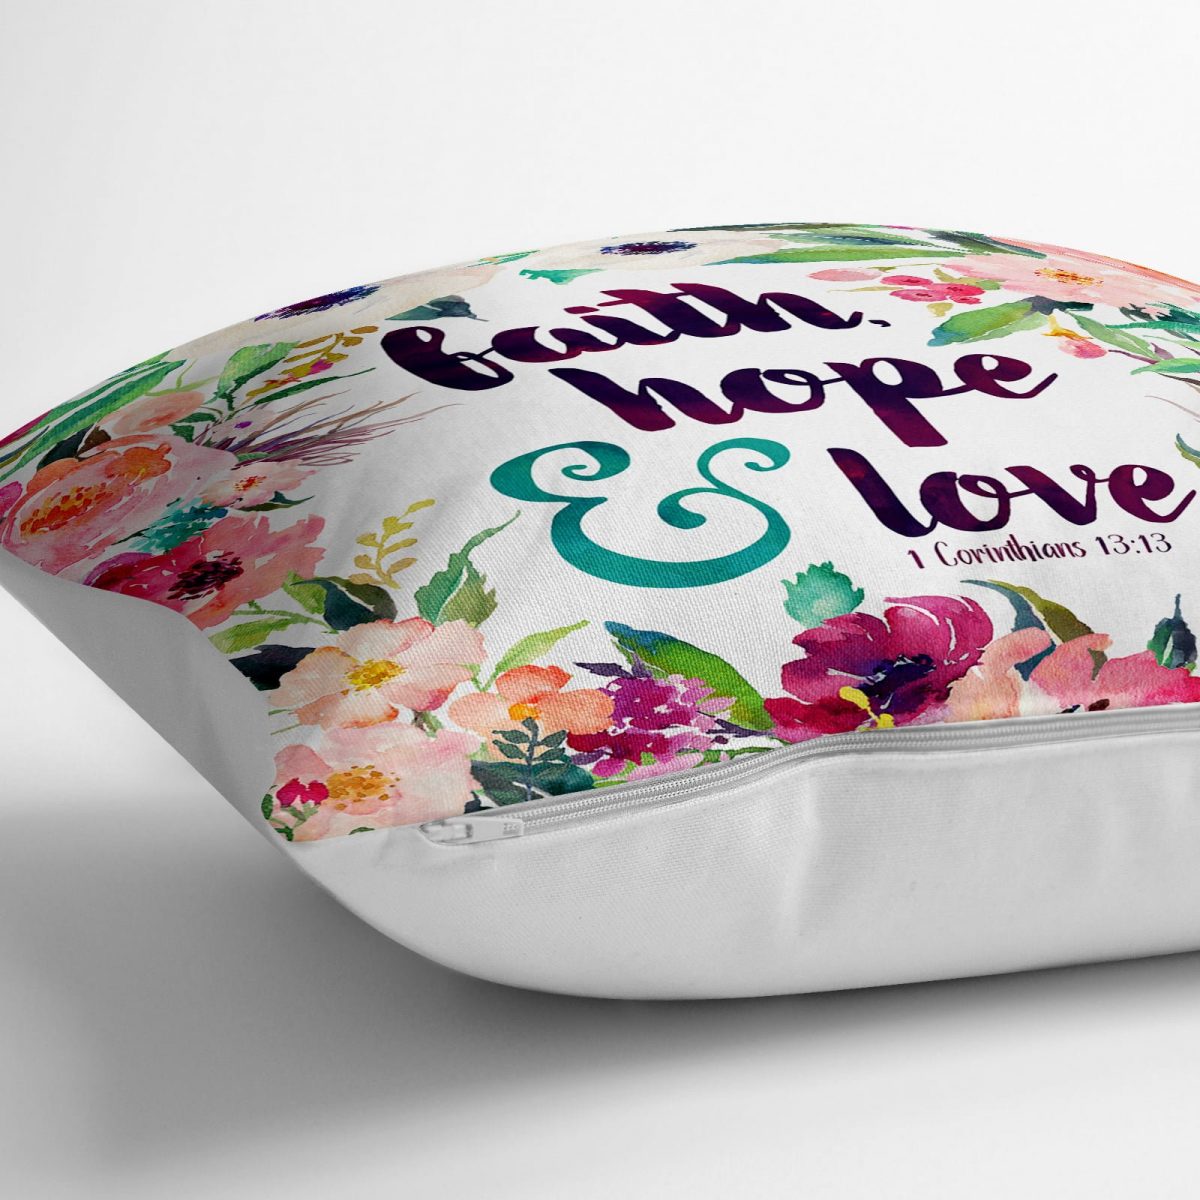 Çiçek Desenli Yazılı Dijital Baskılı Dekoratif Yer Minderi - 70 x 70 cm Realhomes